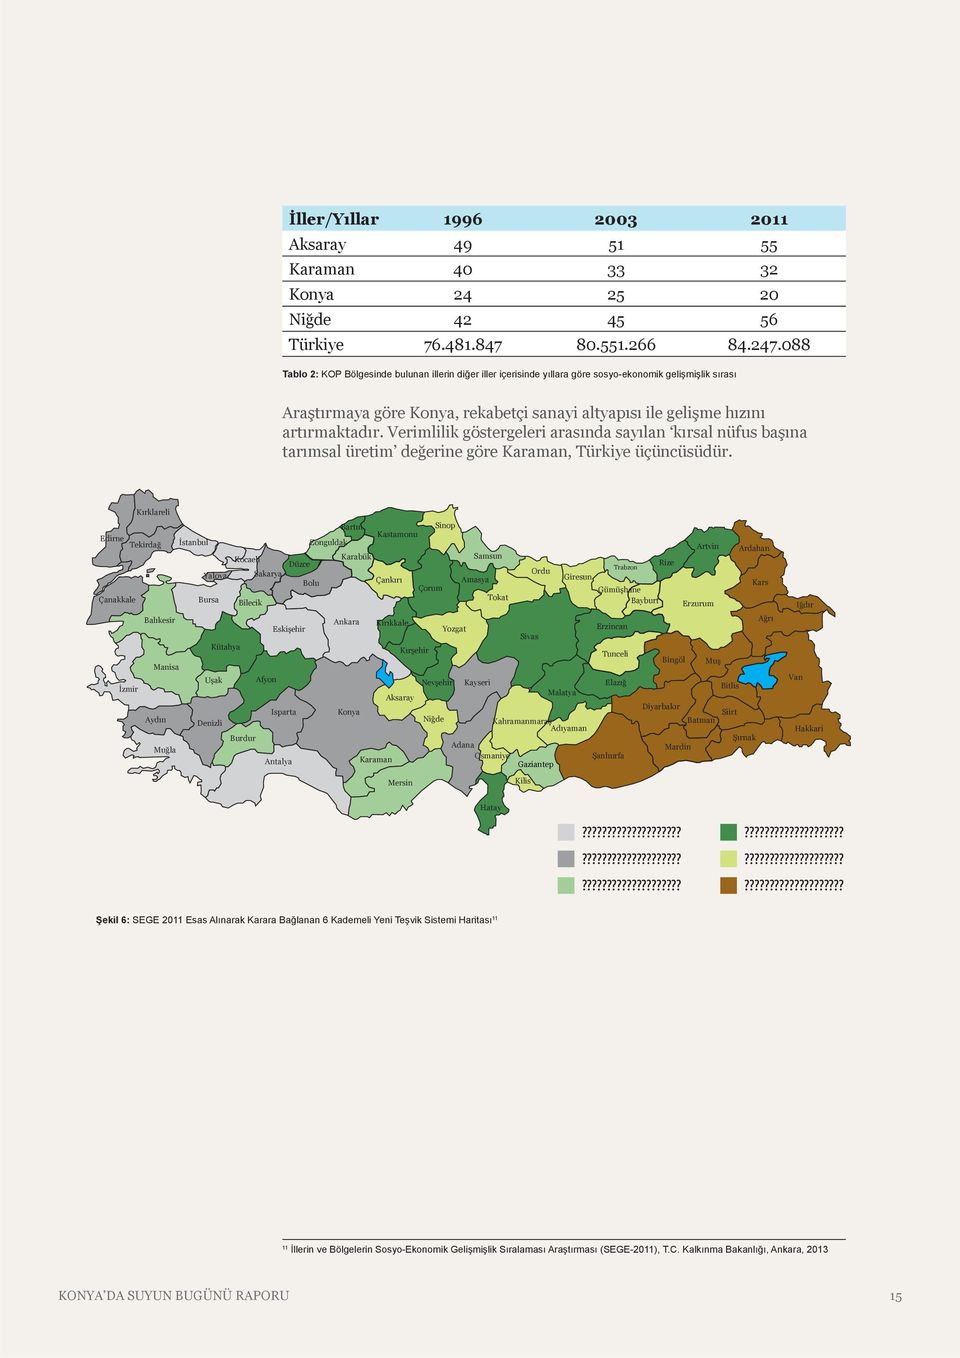 Verimlilik göstergeleri arasında sayılan kırsal nüfus başına tarımsal üretim değerine göre Karaman, Türkiye üçüncüsüdür.